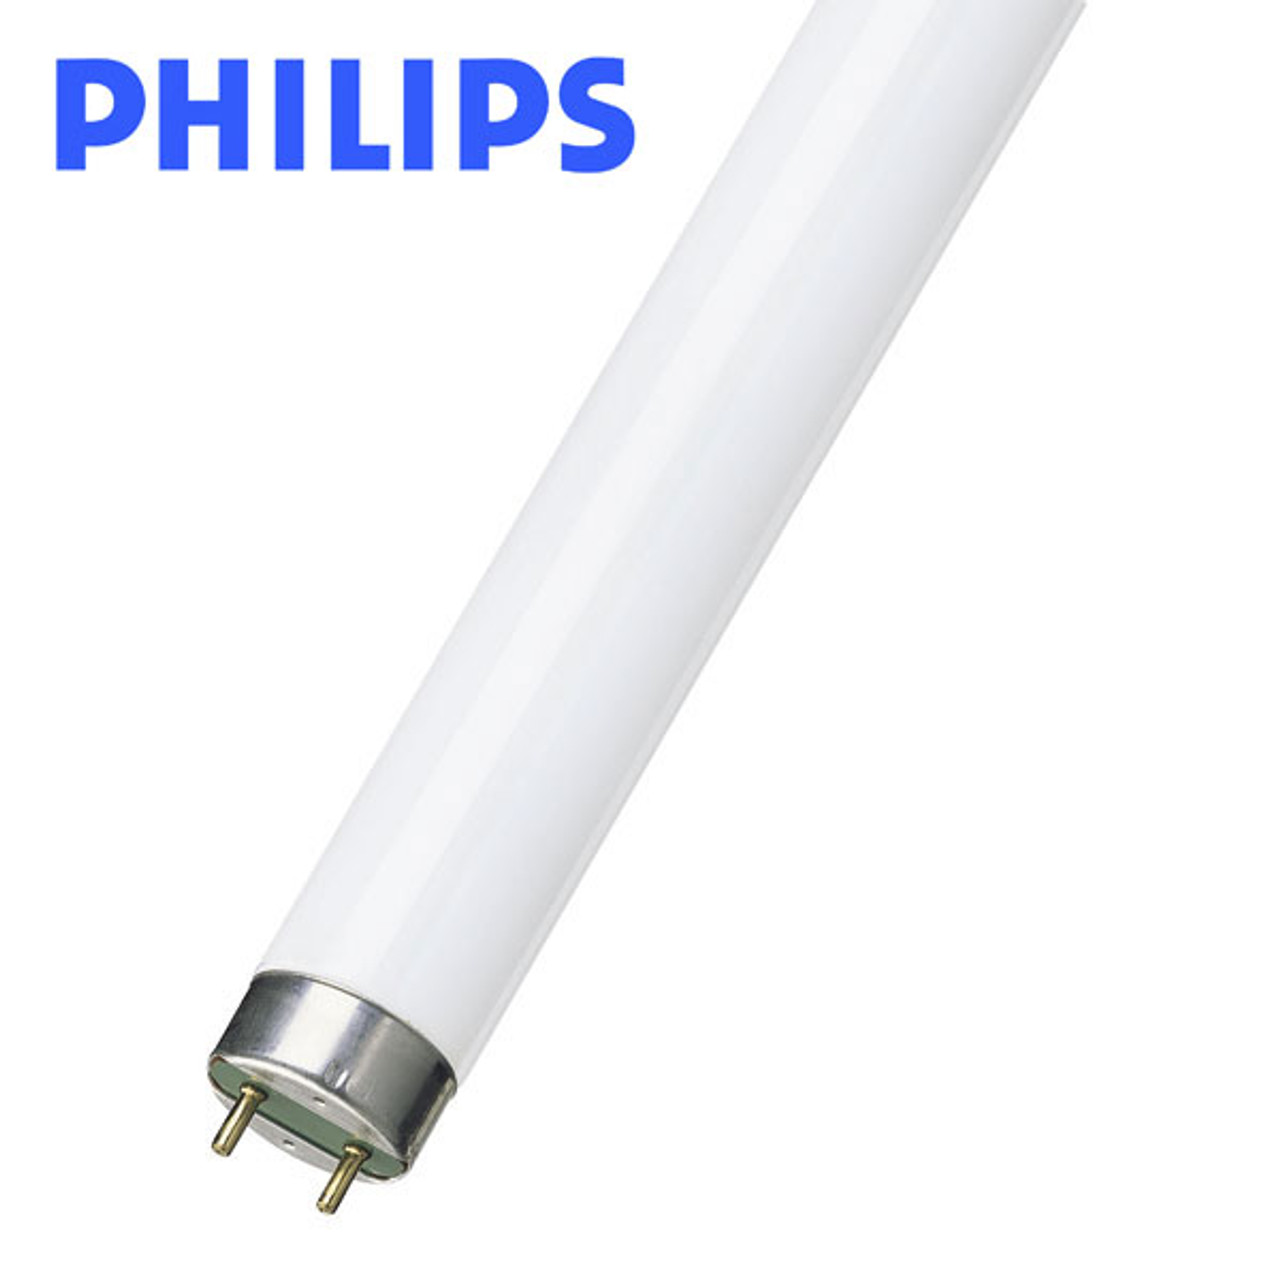 Philips Master TLD Reflex 36W 830 Warm White